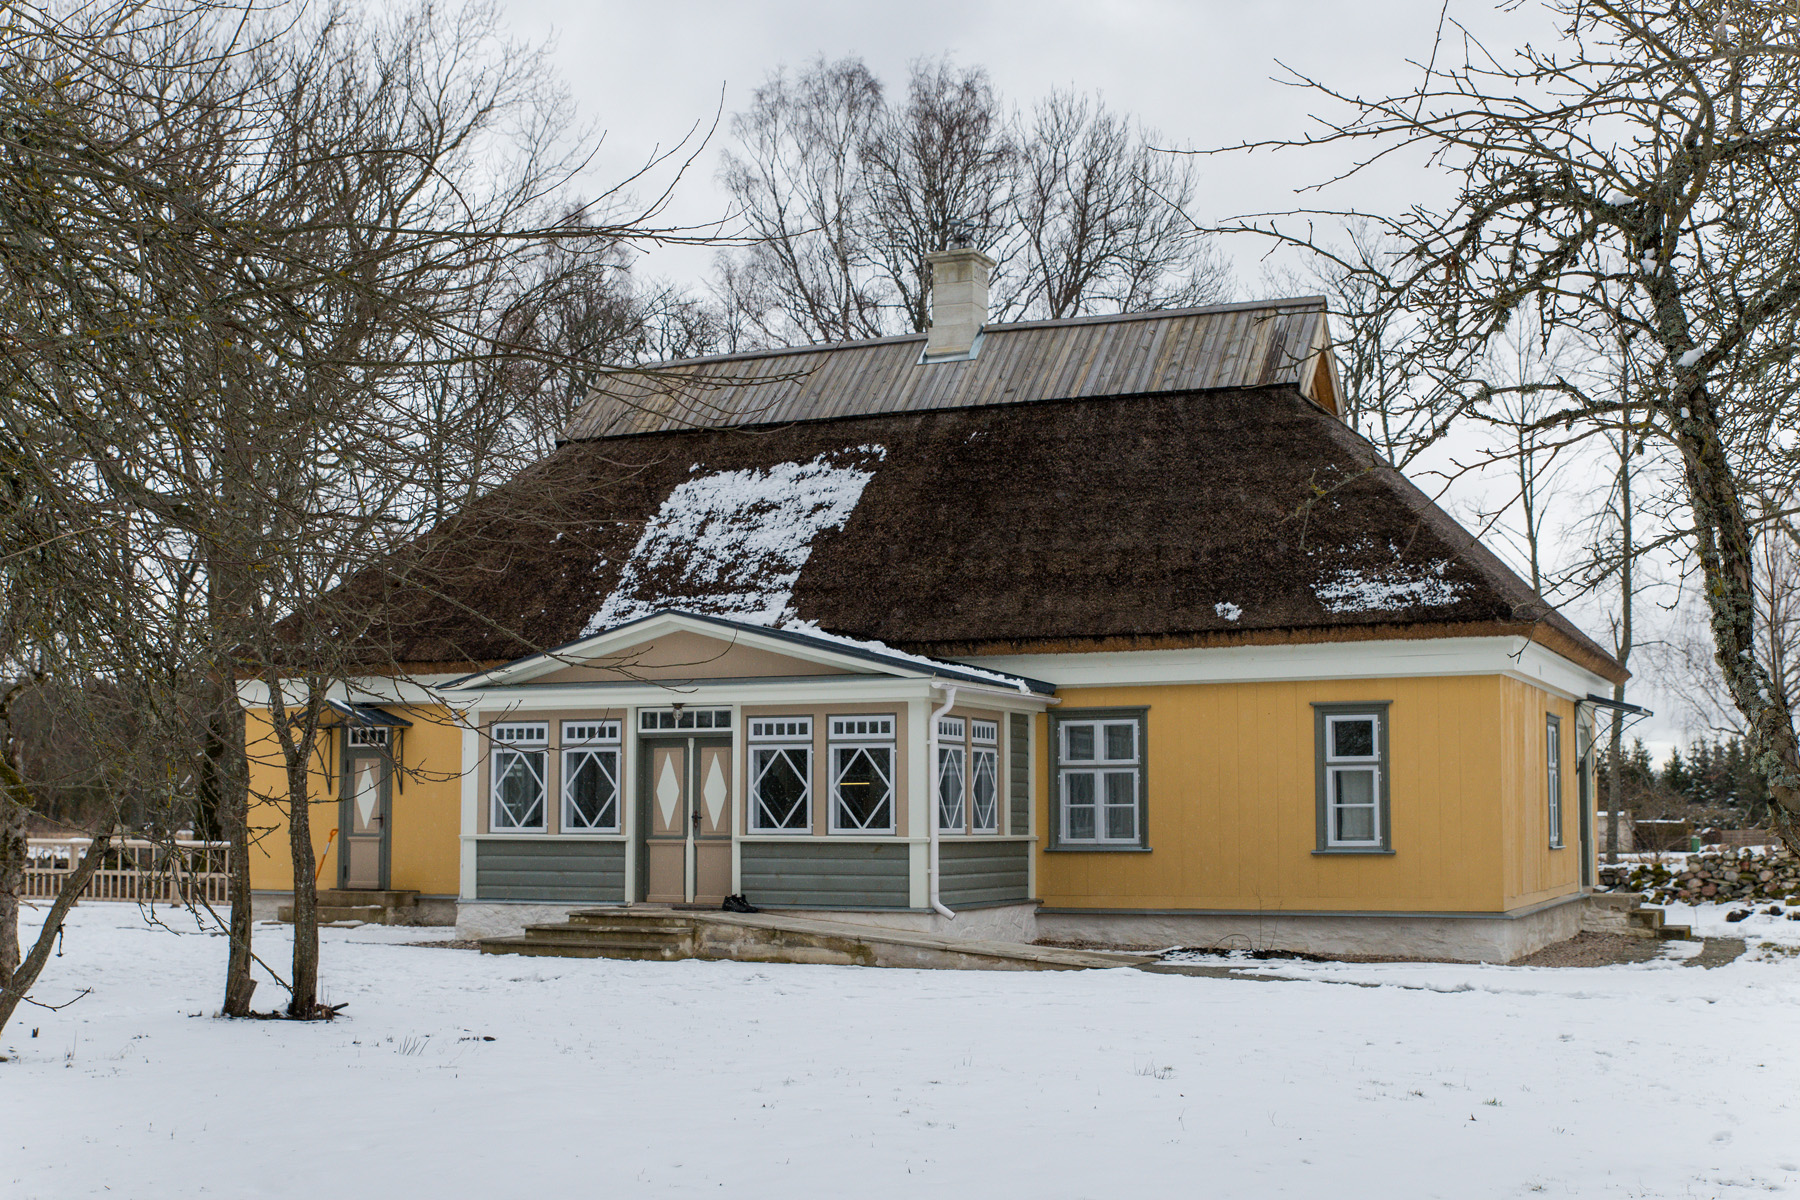 20160320-Saaremaa-745-Kotlandi-.jpg - 18.-20. märts 2016. Saaremaa ringreis. Kotlandi mõis